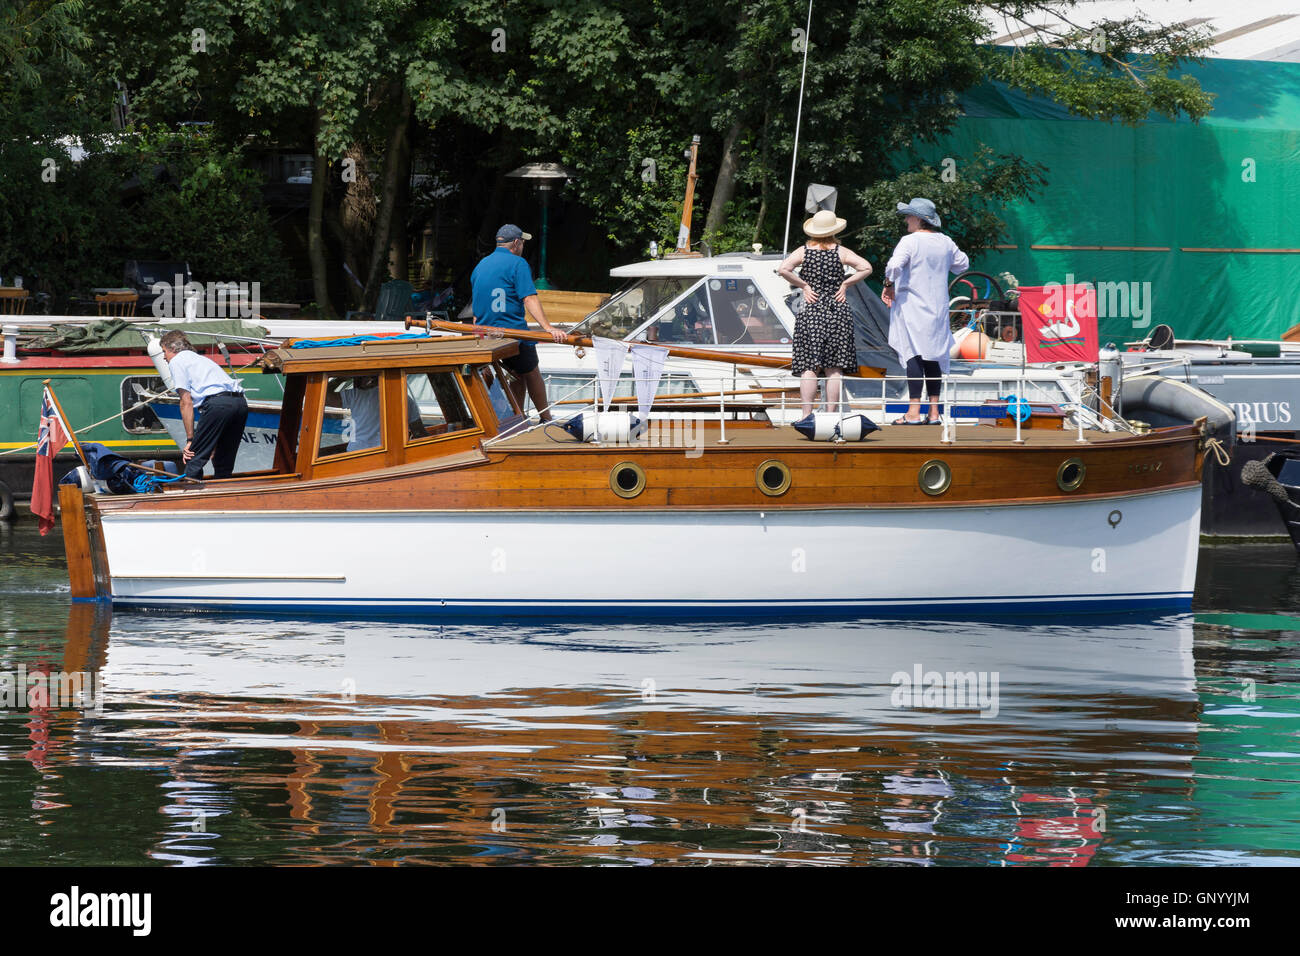 Swan Augmenter bateau sur la rivière Thames, à Laleham Lalham, atteindre, Surrey, Angleterre, Royaume-Uni Banque D'Images